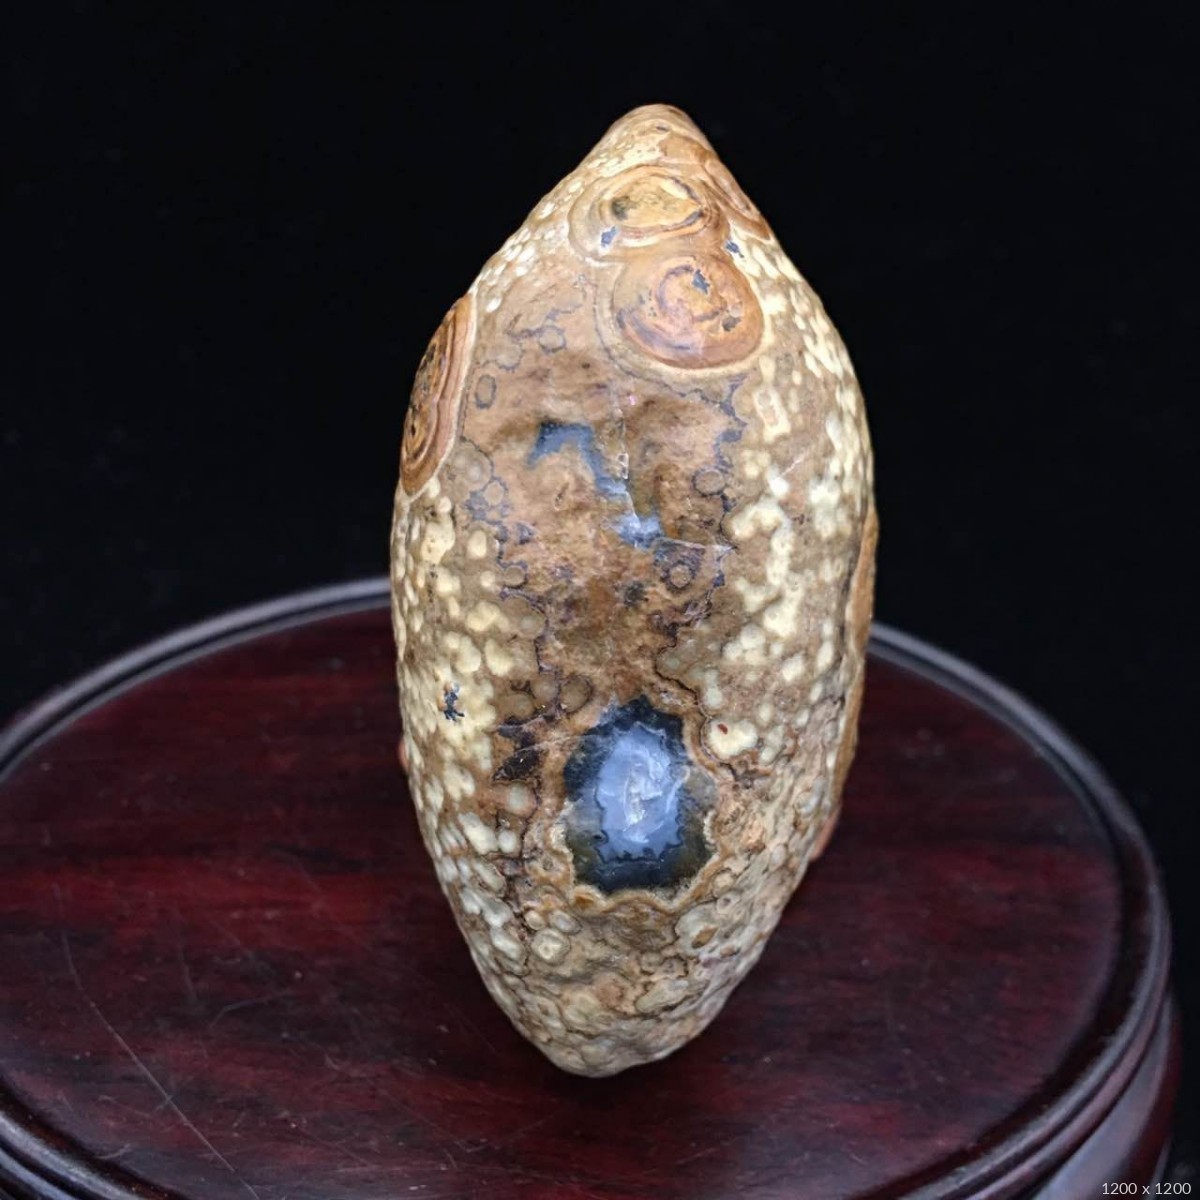 阿拉善玛瑙原石眼睛石天珠戈壁玛瑙浮雕眼睛石精品单颗原石天珠-阿里巴巴